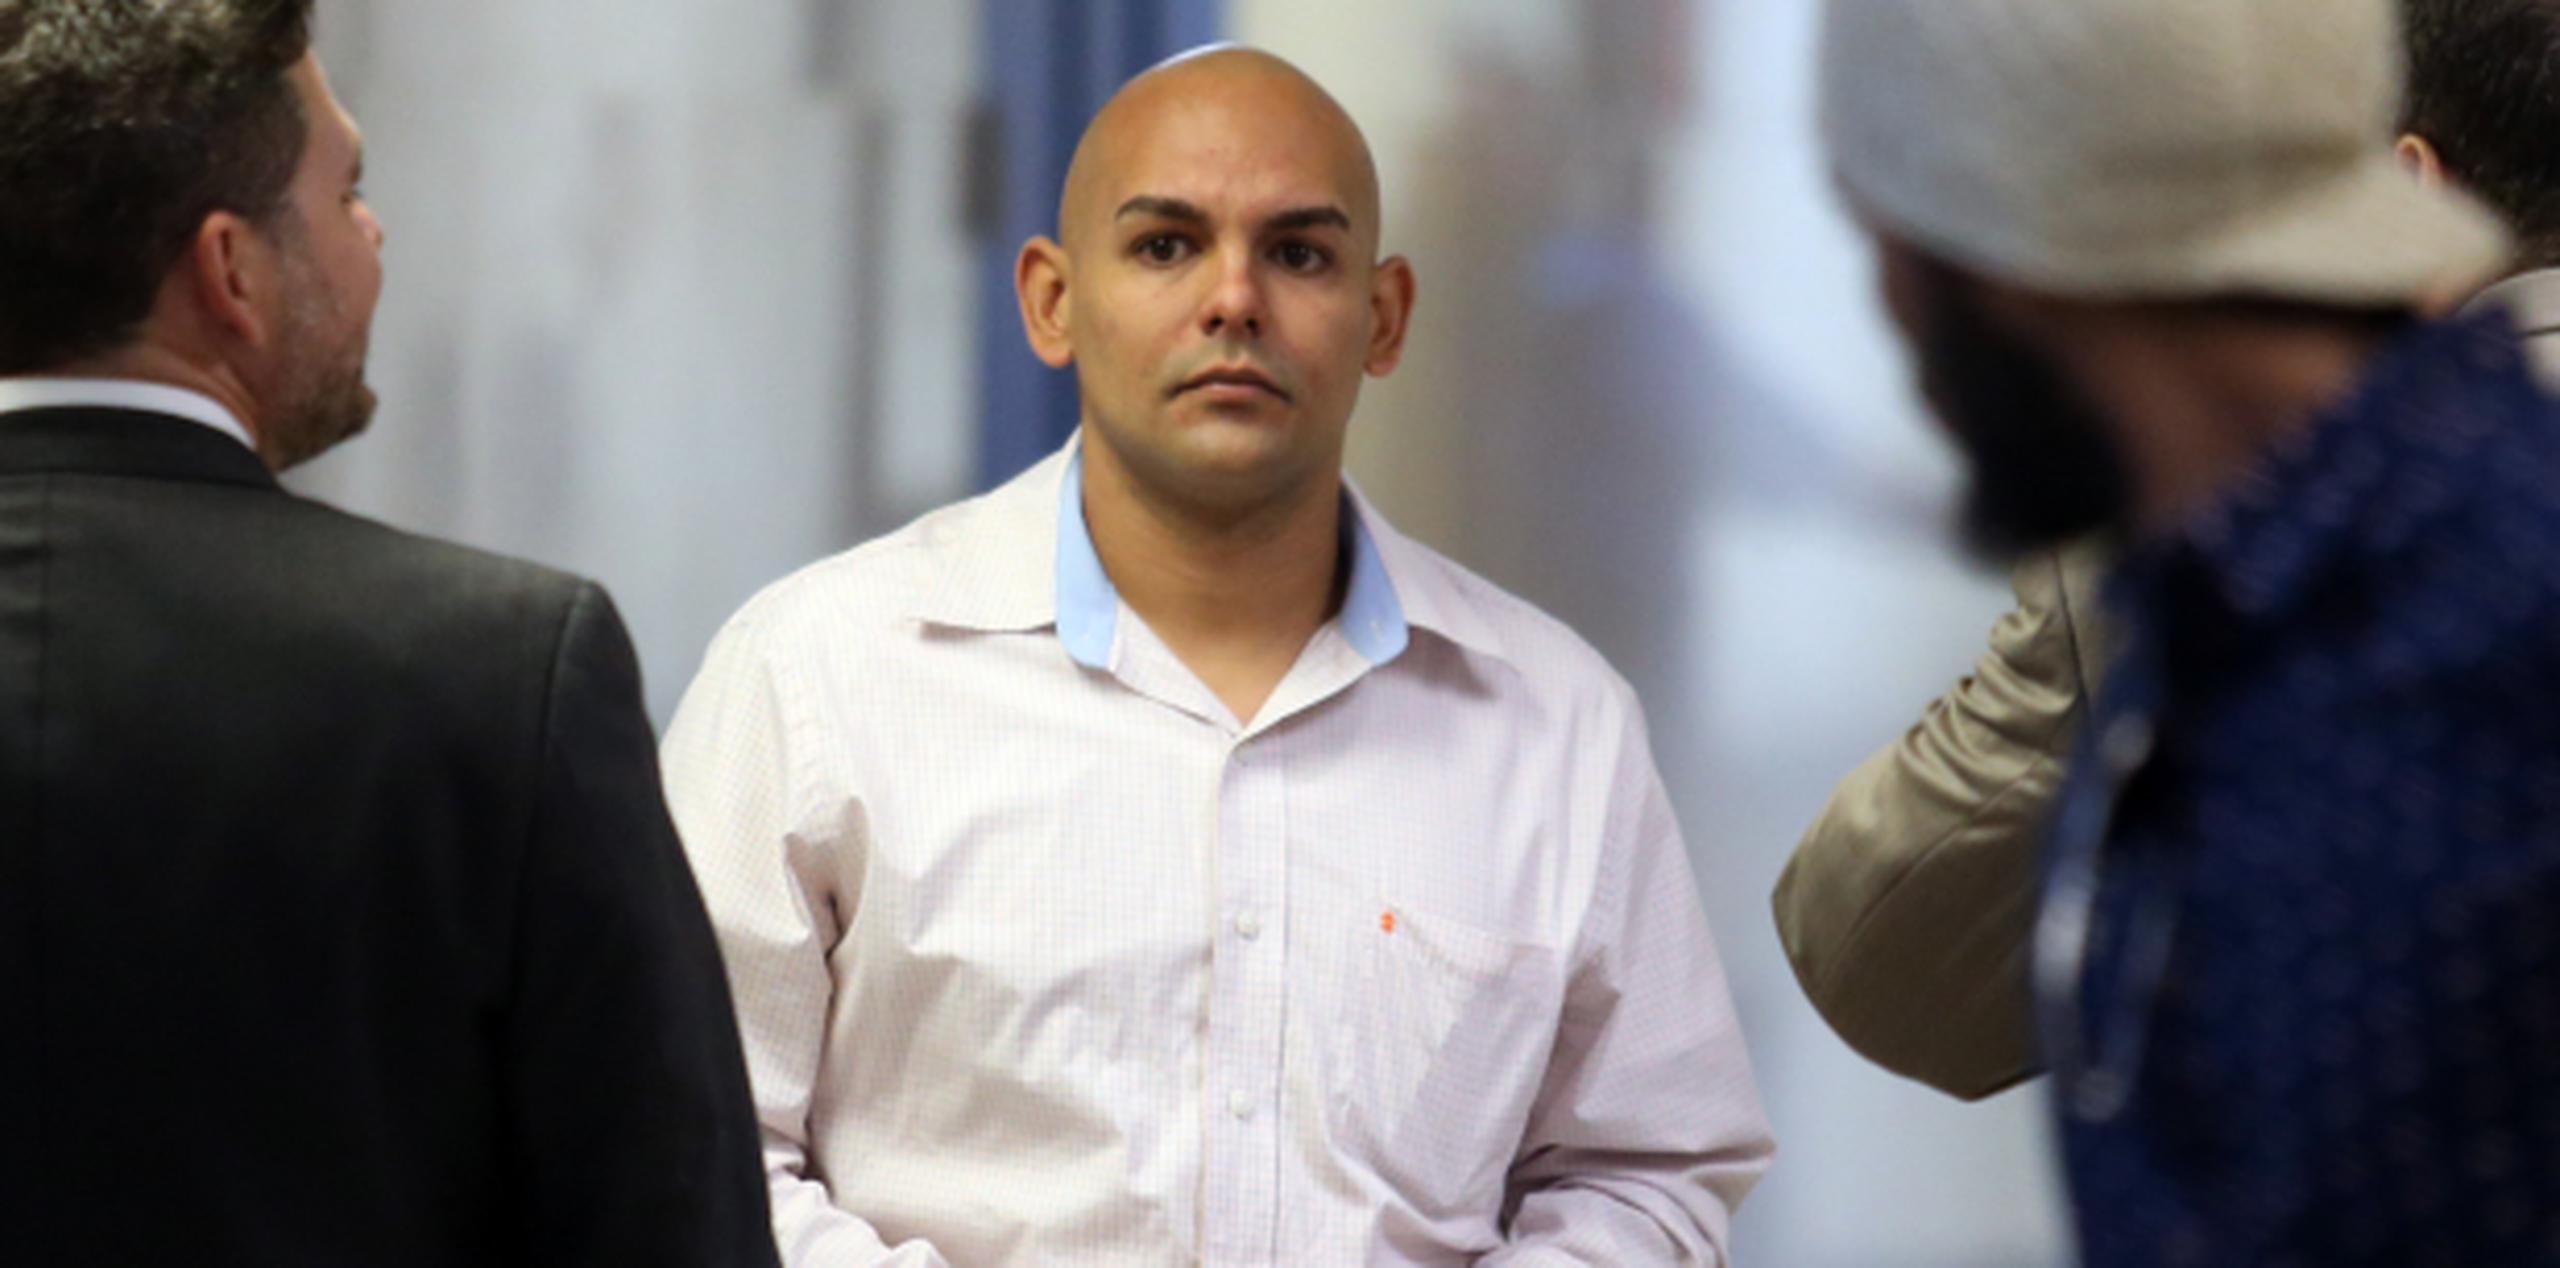 Rivera Pagán, de 36 años, y otros dos policías estatales enfrentan cargos por supuestamente secuestrar y robar dinero a un ciudadano dominicano. (juan.martinez@gfrmedia.com)